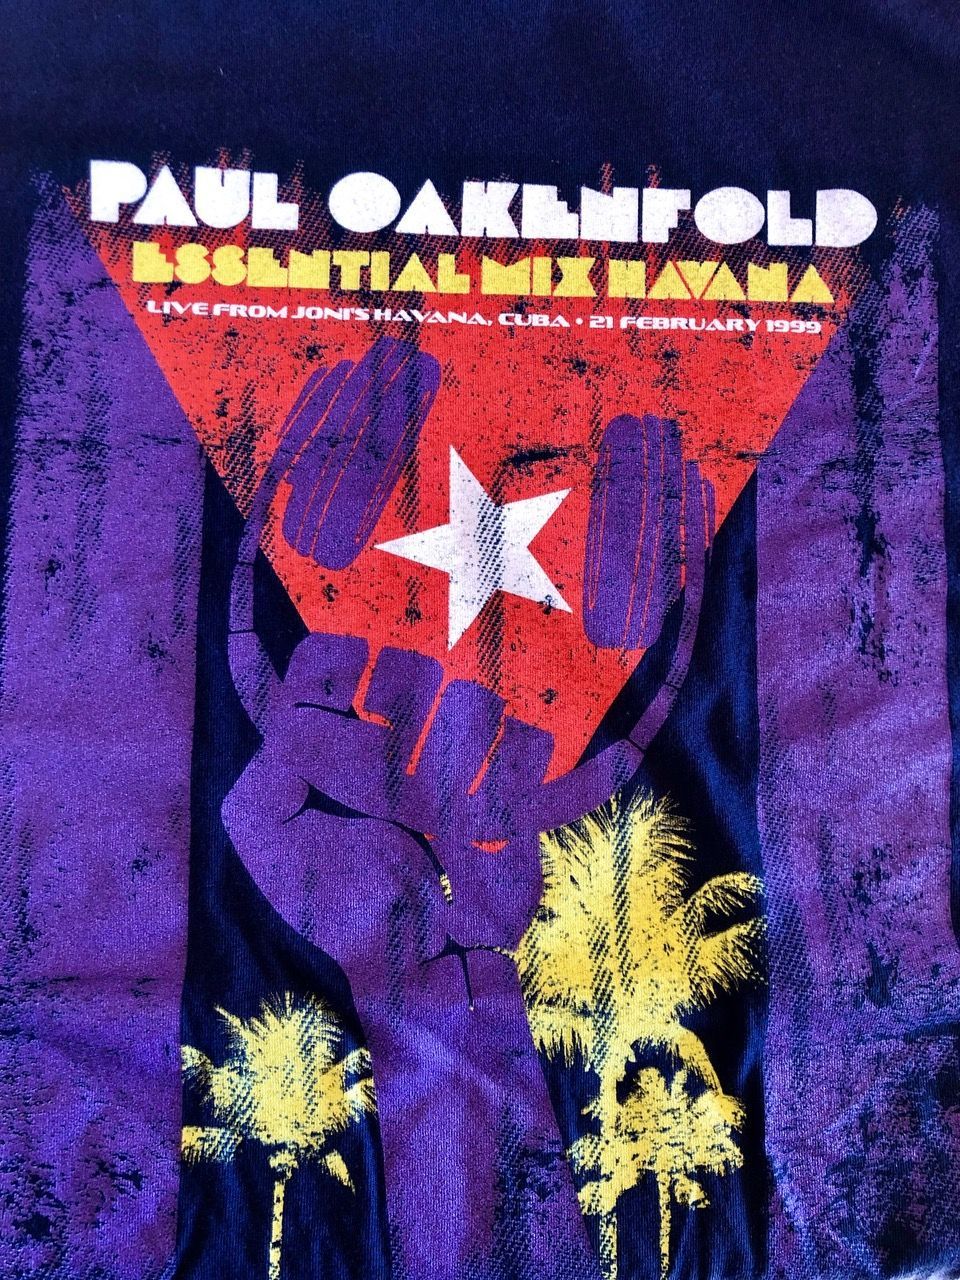 Paul Oakenfold An Electronic Music Guru In Cuba Oncubanews English